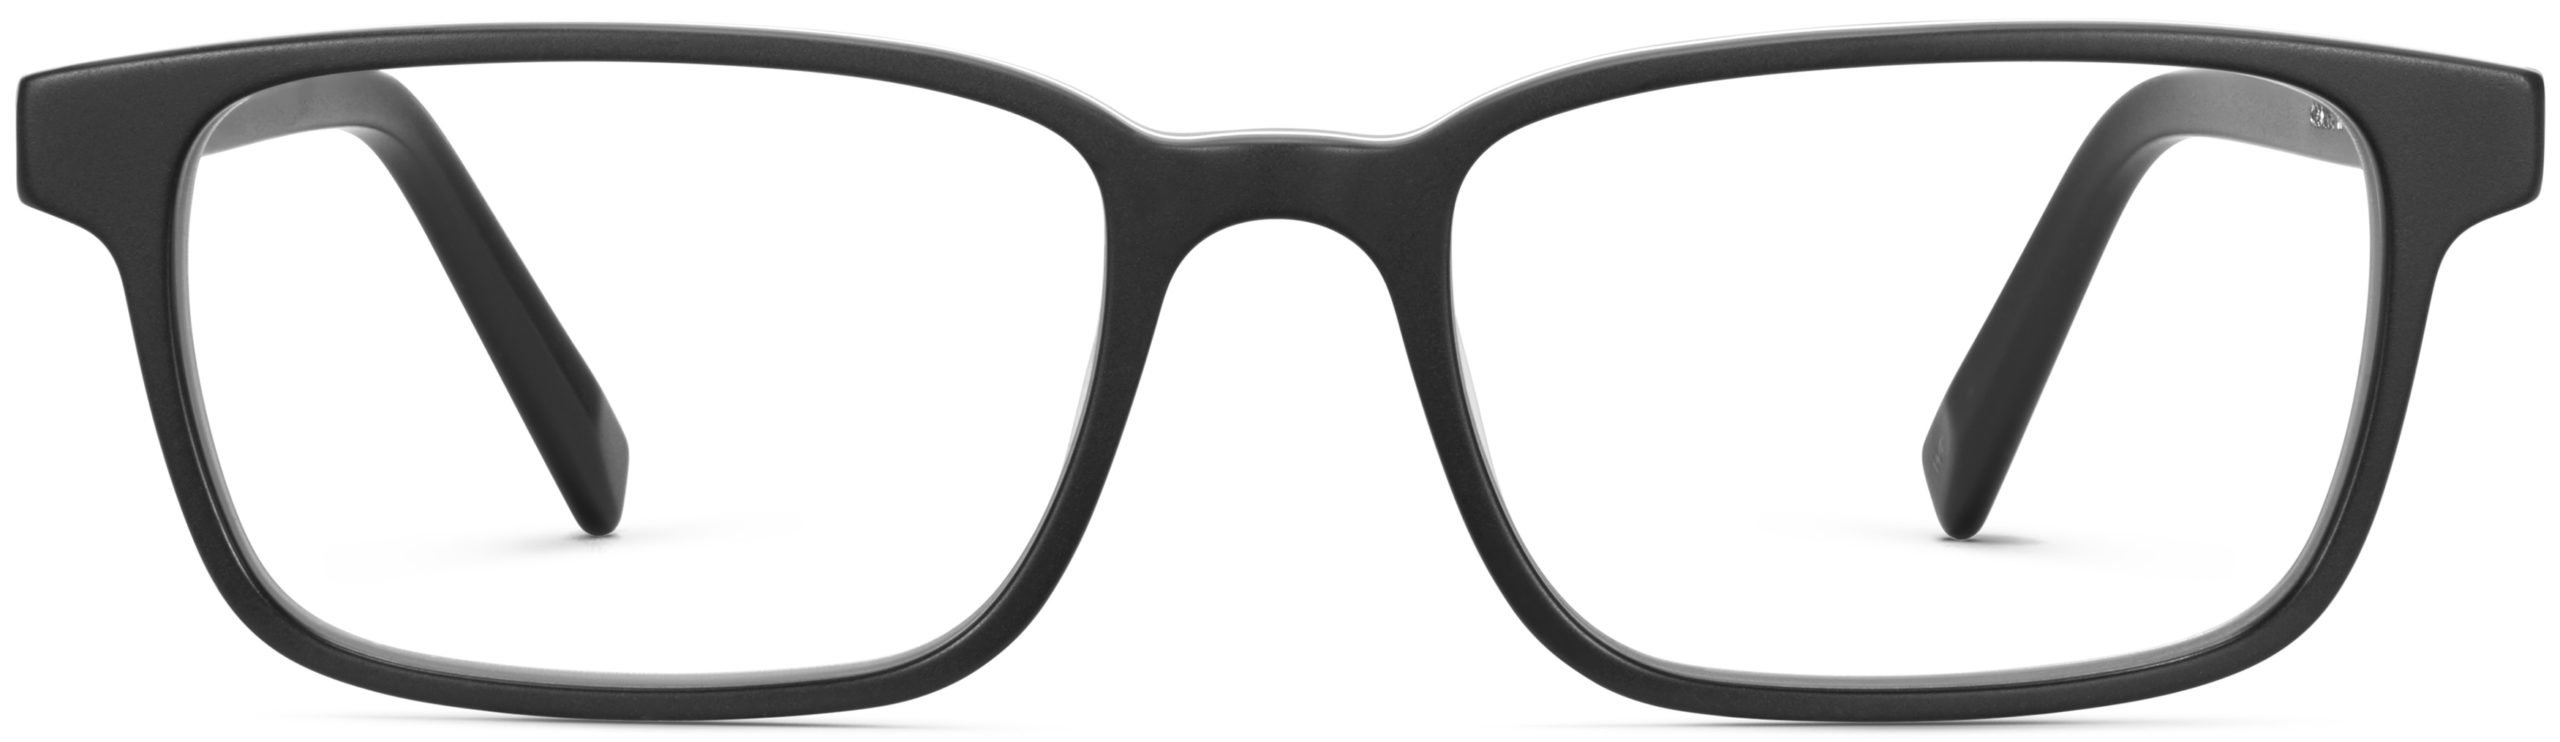 Crane glasses in black matte eclipse